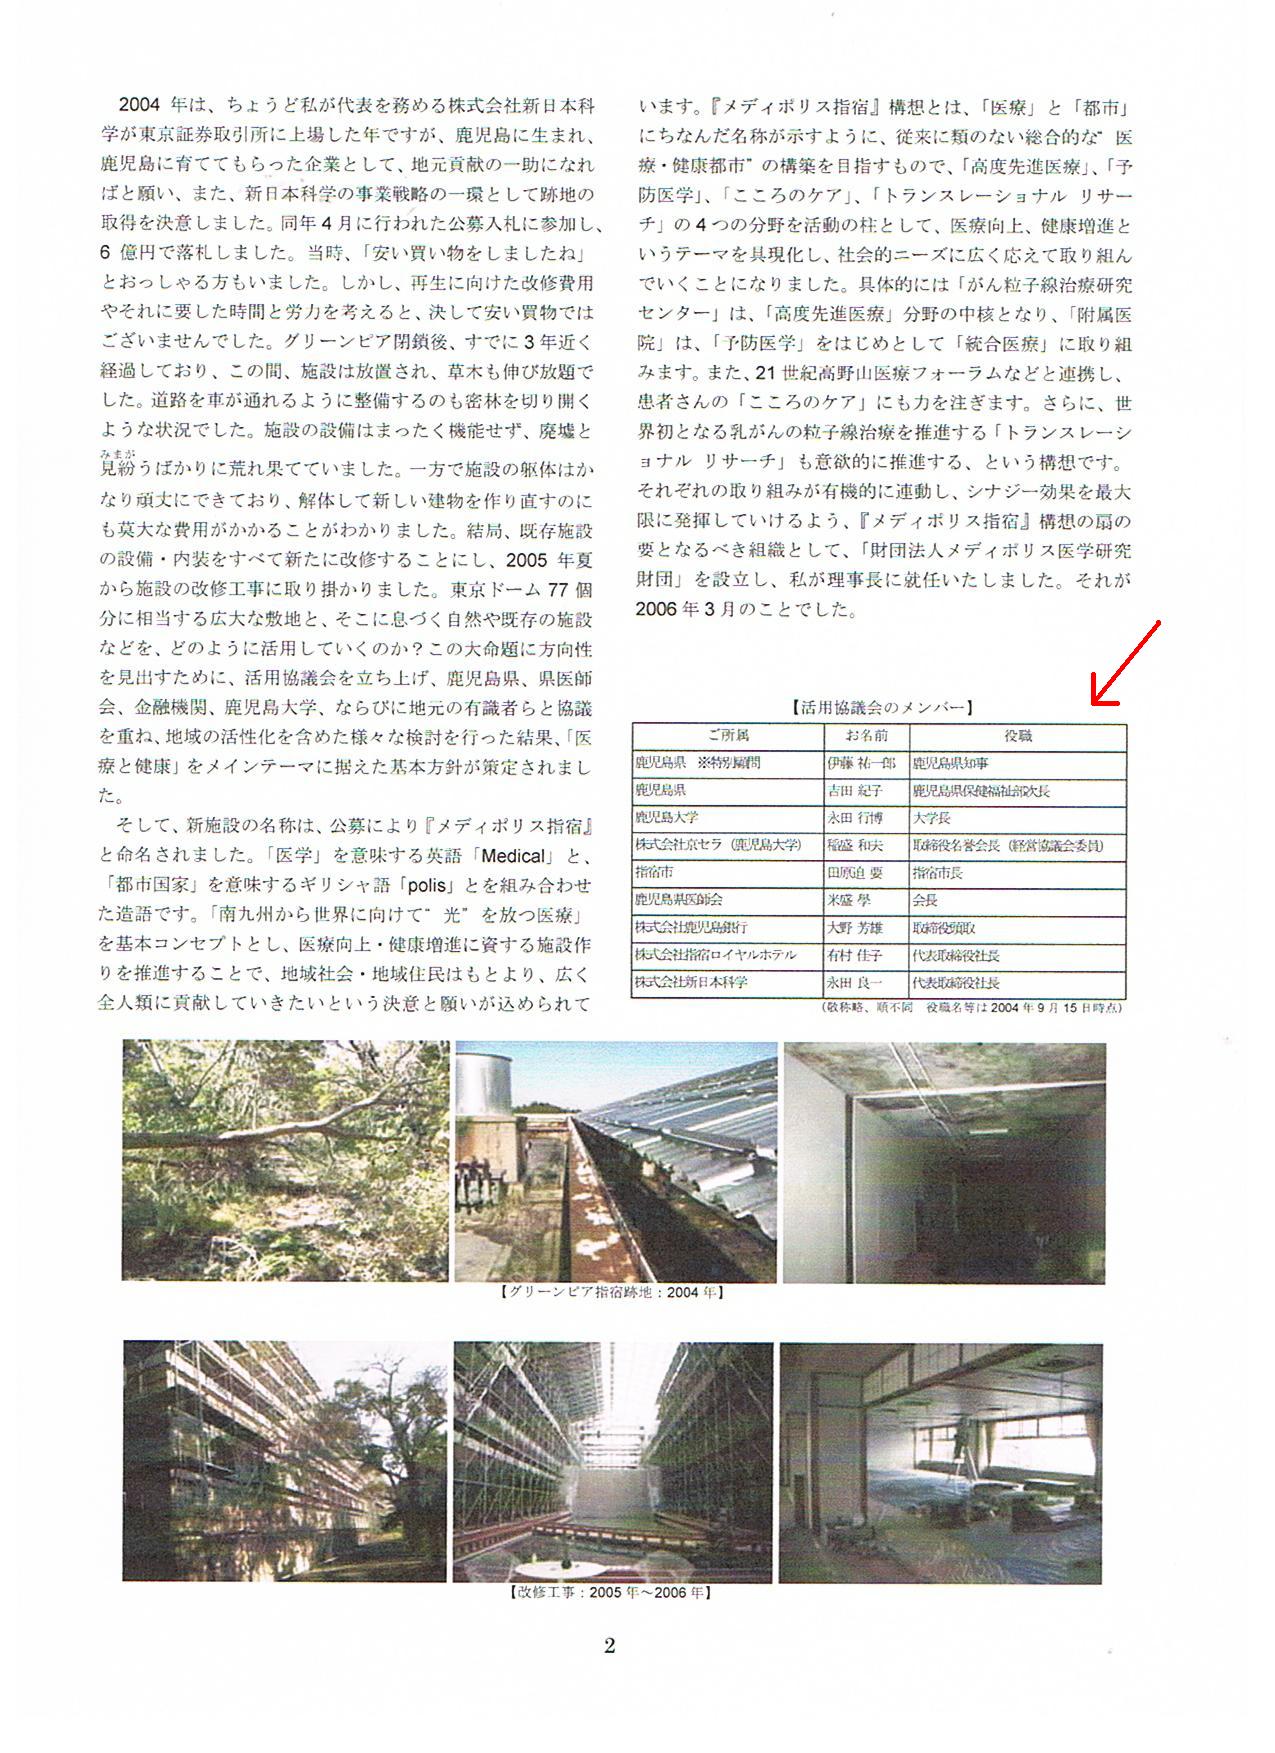 http://hunter-investigate.jp/news/2012/08/05/gennpatu%201864410472.jpg